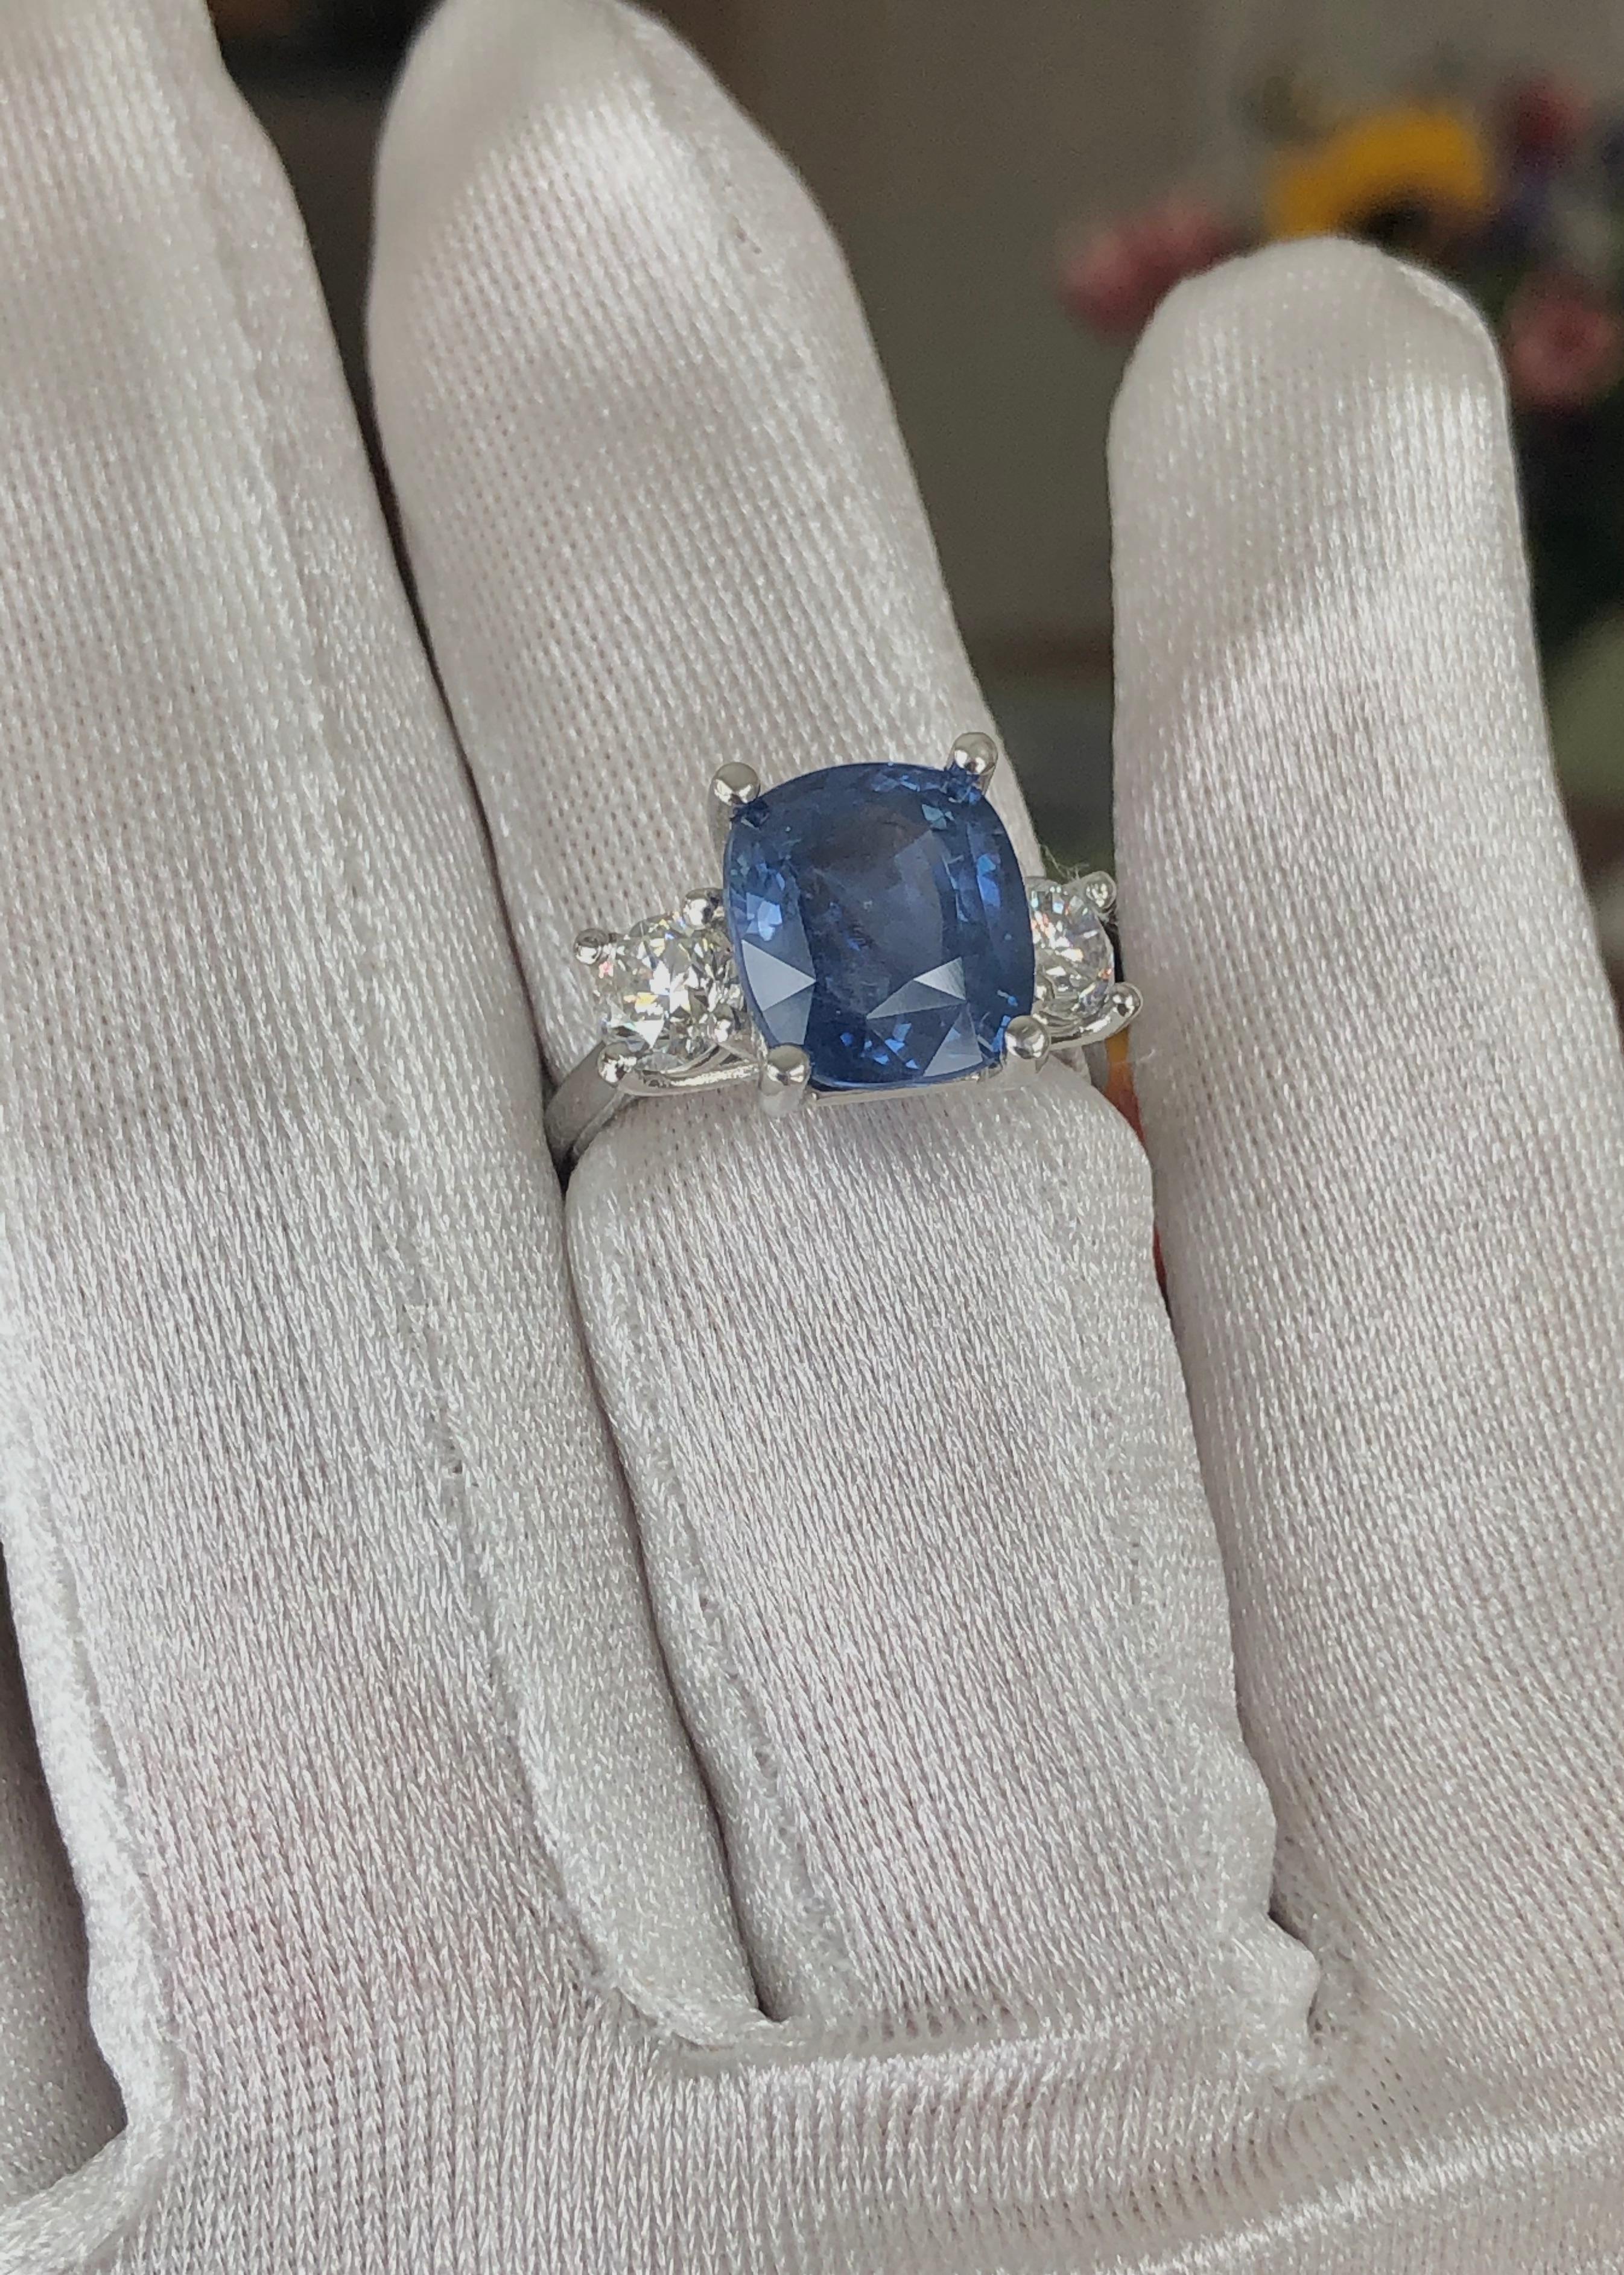 GIA zertifiziert Ungeheizte Natürliche Blauer Saphir und Diamant Verlobungsring Drei Stein in Platin.  
Der kissenförmige blaue Ceylon-Natursaphir wiegt insgesamt 7,11 Karat und zwei runde Diamanten im Brillantschliff wiegen insgesamt 1,29 Karat,